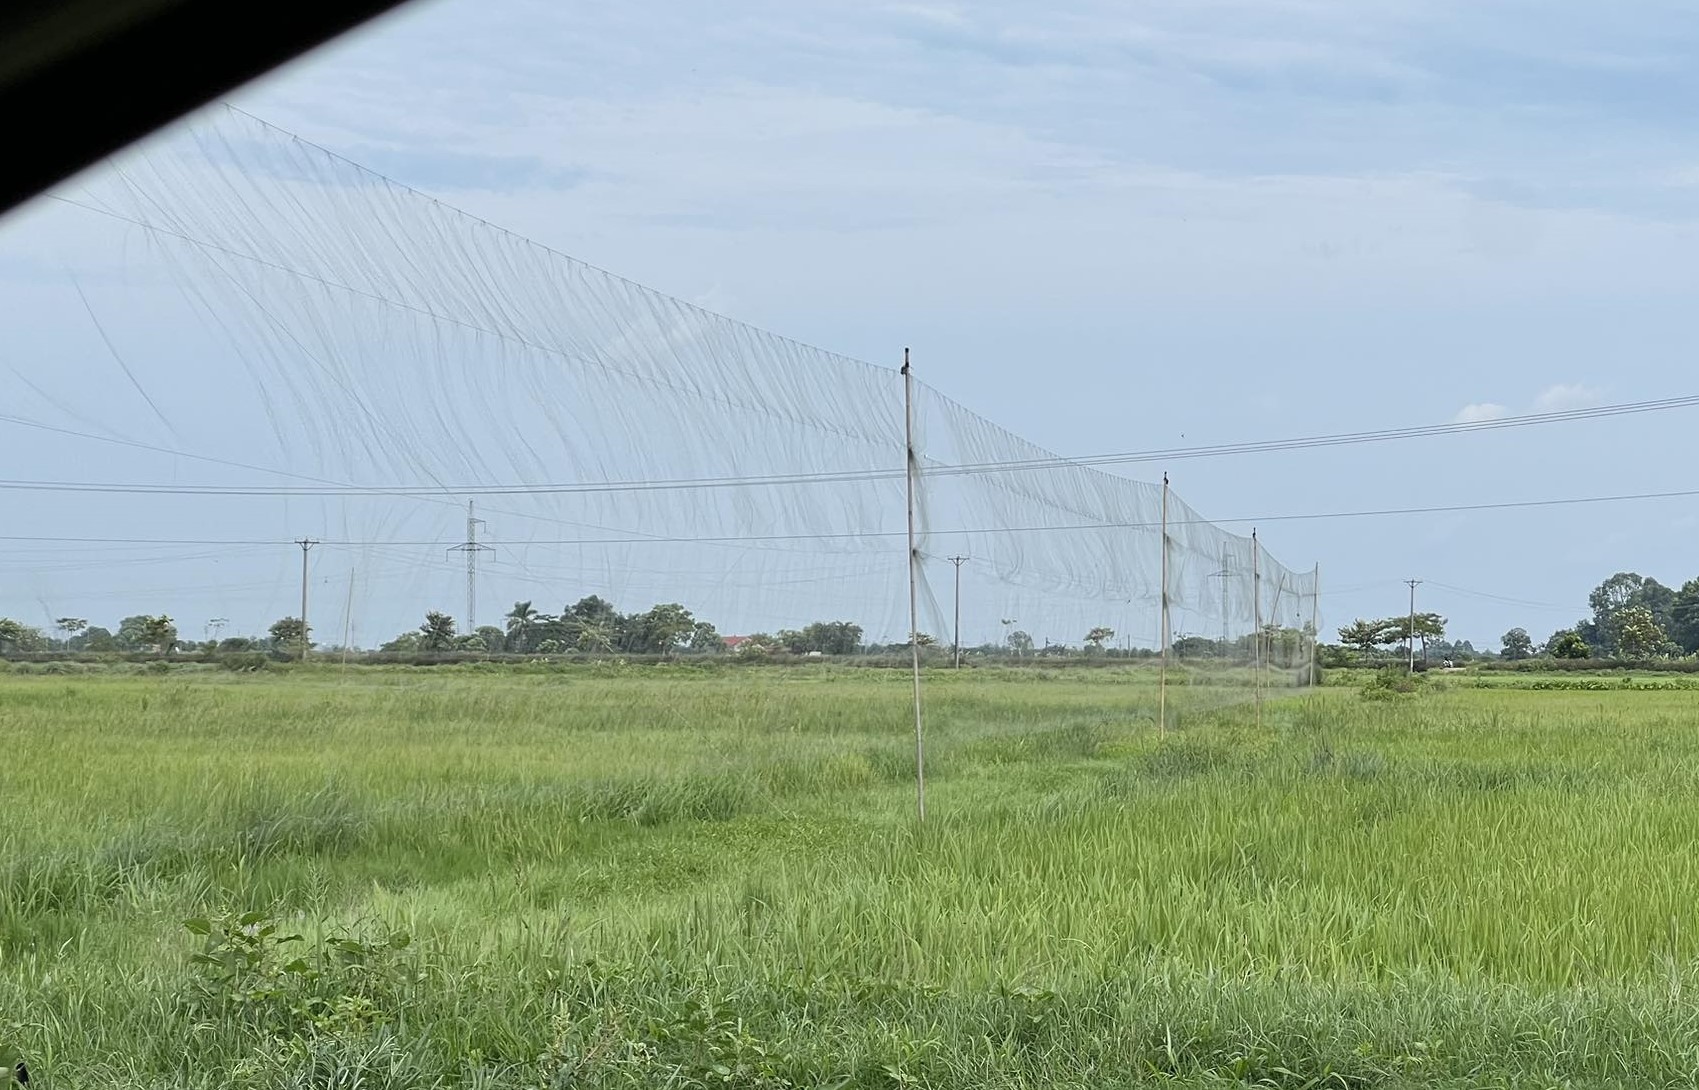 Lưới mờ giăng trên cánh đồng để bẫy chim. Hình ảnh ghi nhận tại xã Bình Minh, Thanh Oai, Hà Nội. Ảnh: Xuân Tâm